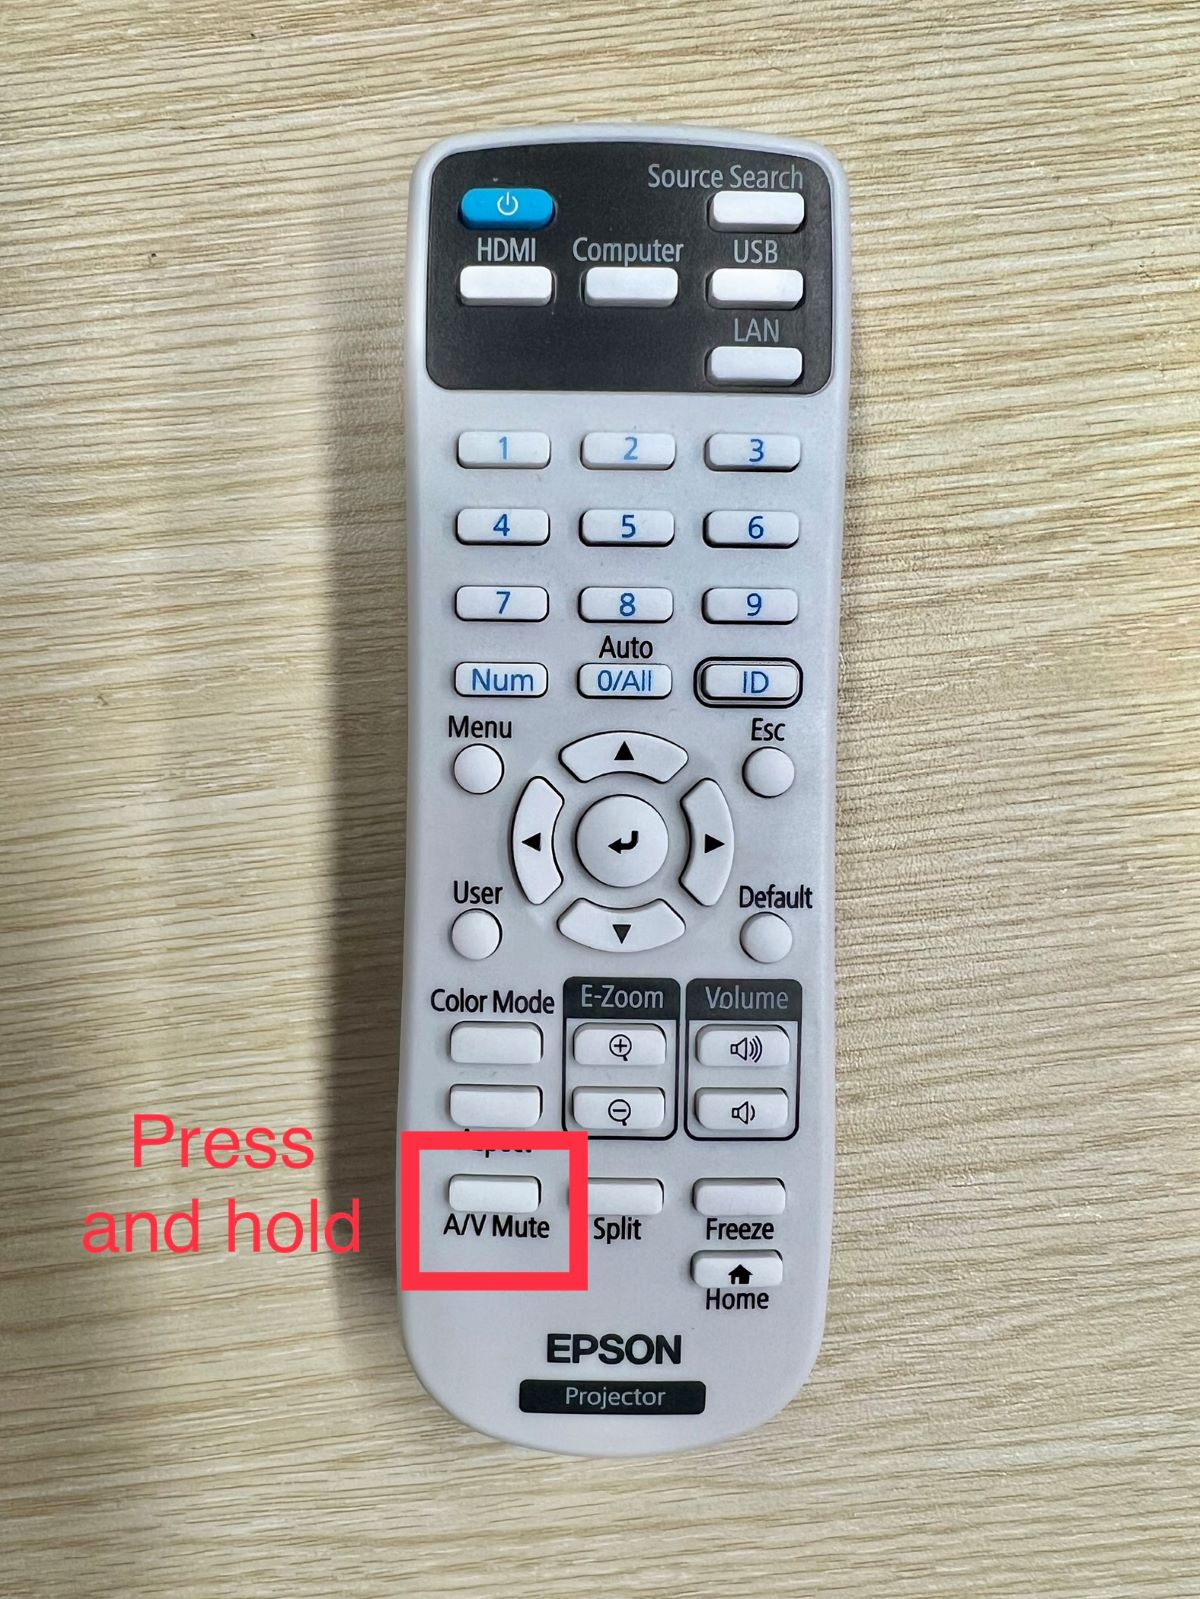 av mute button on an epson remote